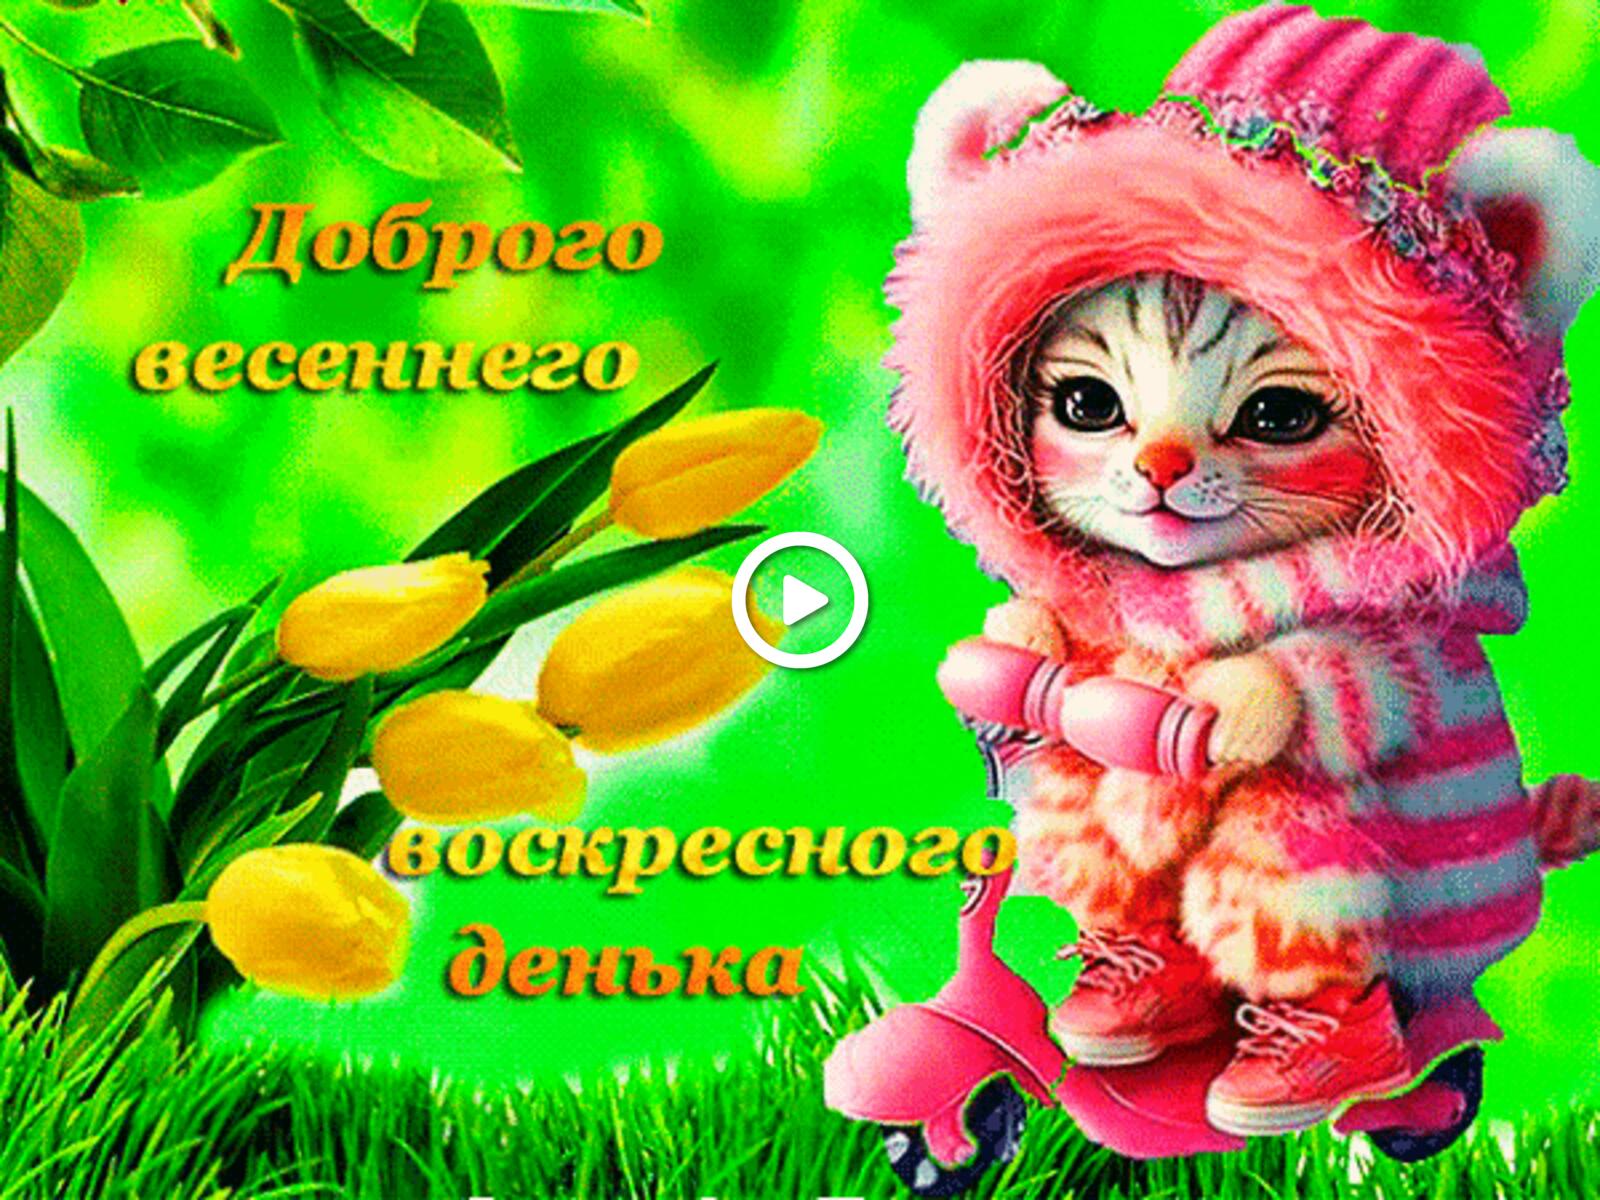 一张以鲜花 小猫 郁金香为主题的明信片